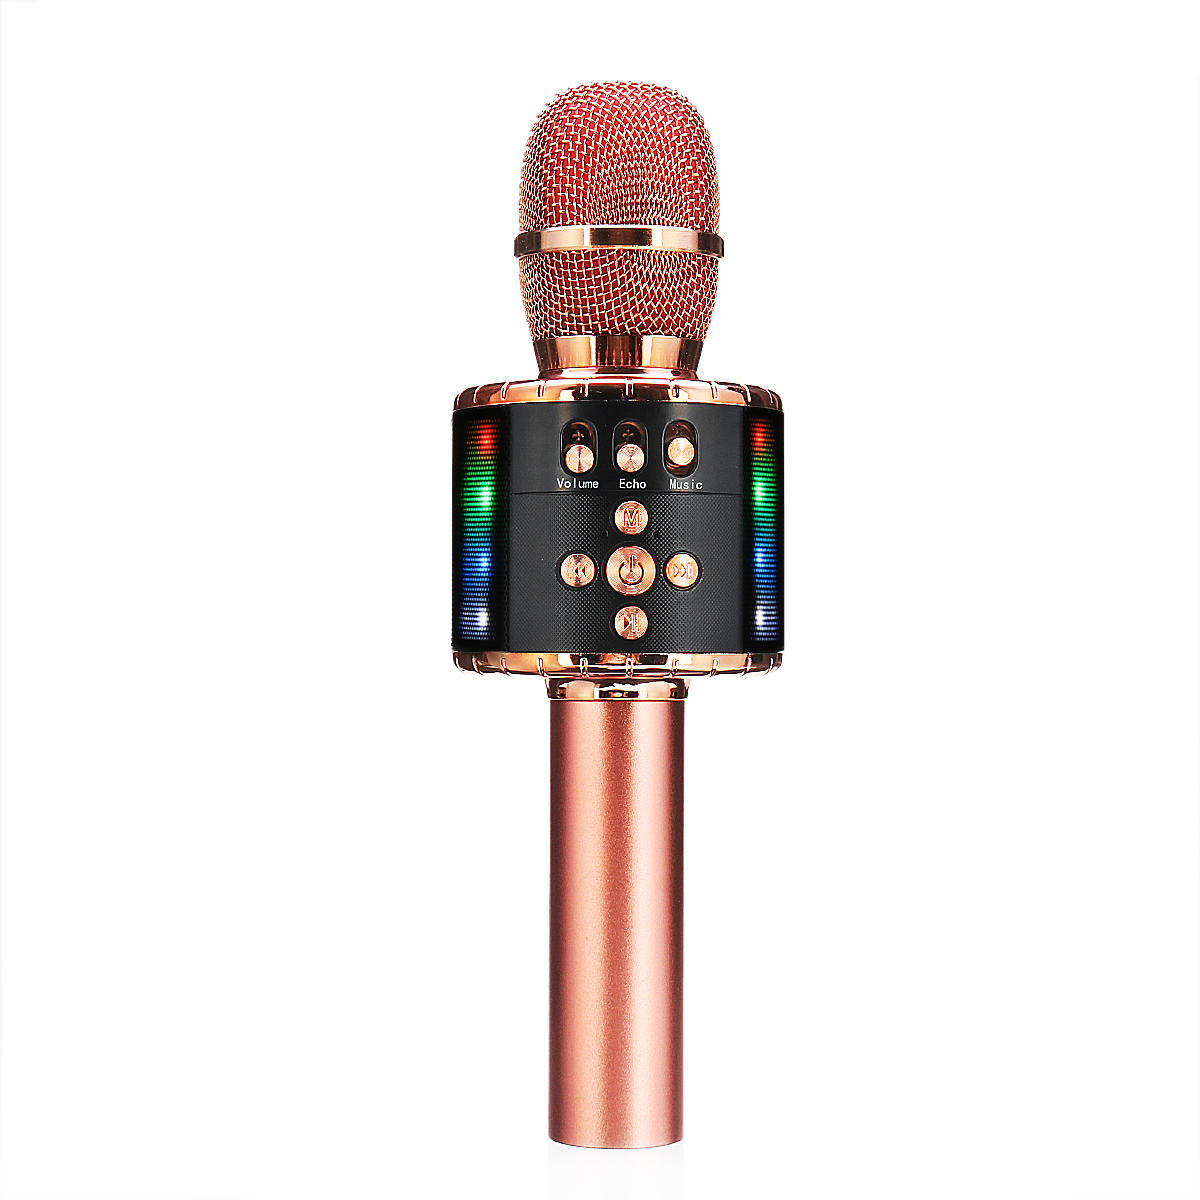 Profesional bluetooth inalámbrico de mano Micrófono altavoz KTV Karaoke Mic reproductor de música cantando grabadora